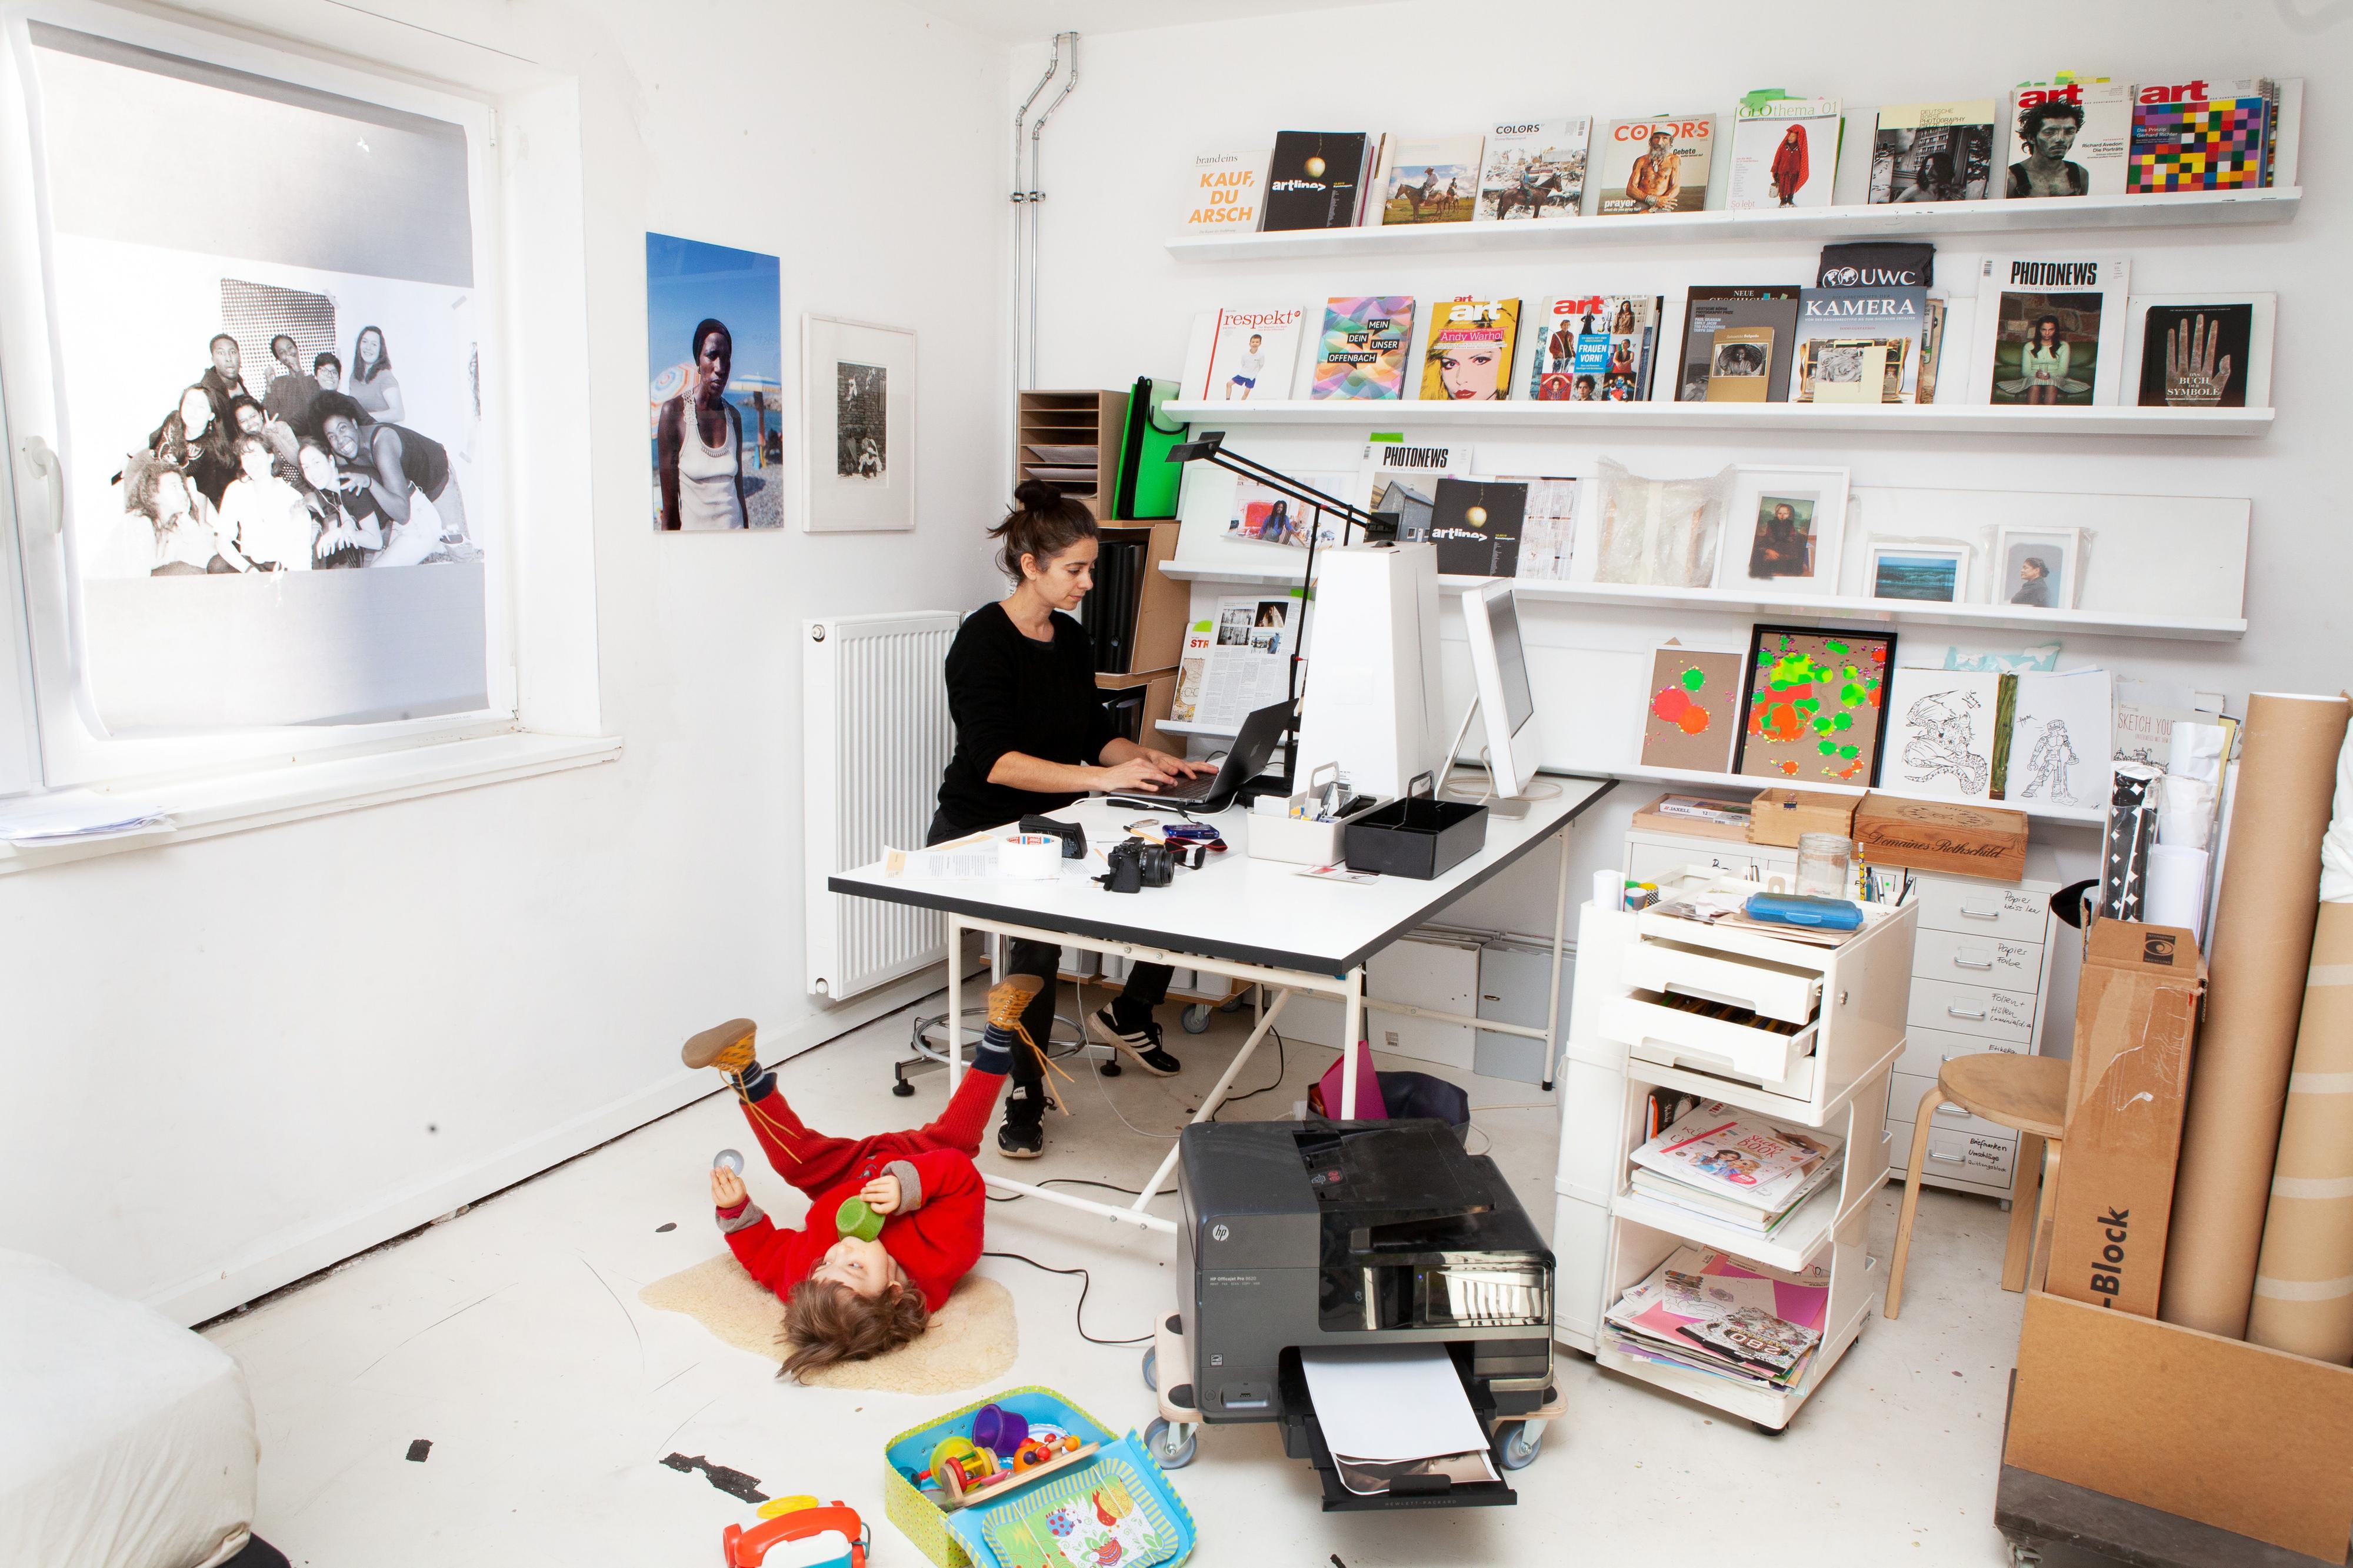 Eine Frau steht an einem Tisch und arbeitet am Computer. Vor dem Tisch liegt ein Kleinkind auf dem Boden und spielt. Im Raum herrscht Unordnung.